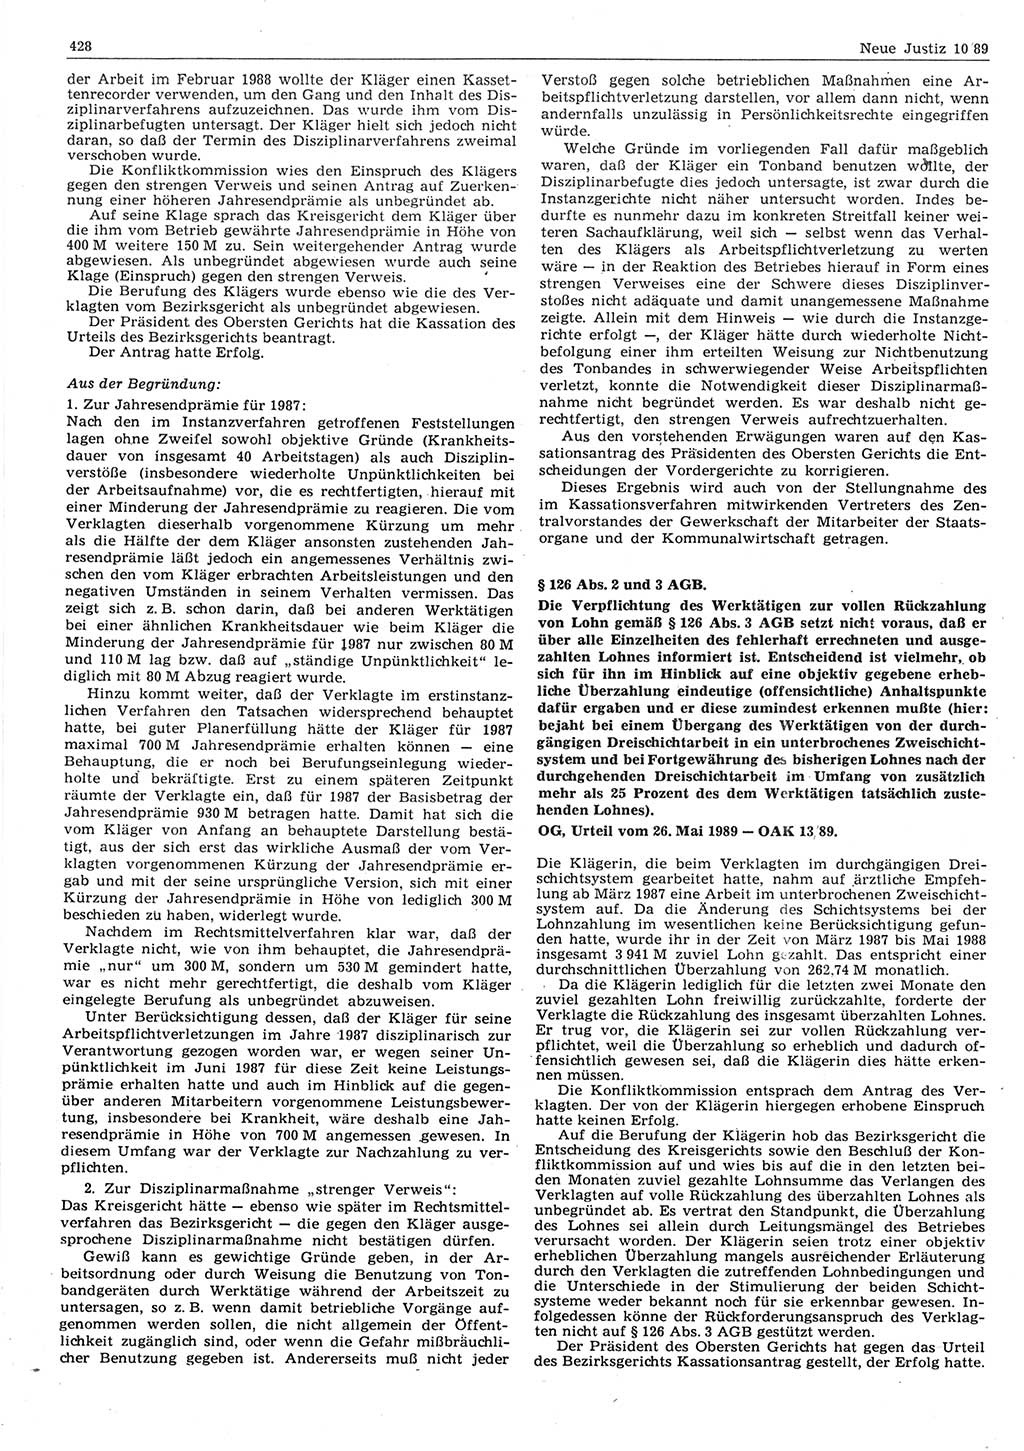 Neue Justiz (NJ), Zeitschrift für sozialistisches Recht und Gesetzlichkeit [Deutsche Demokratische Republik (DDR)], 43. Jahrgang 1989, Seite 428 (NJ DDR 1989, S. 428)